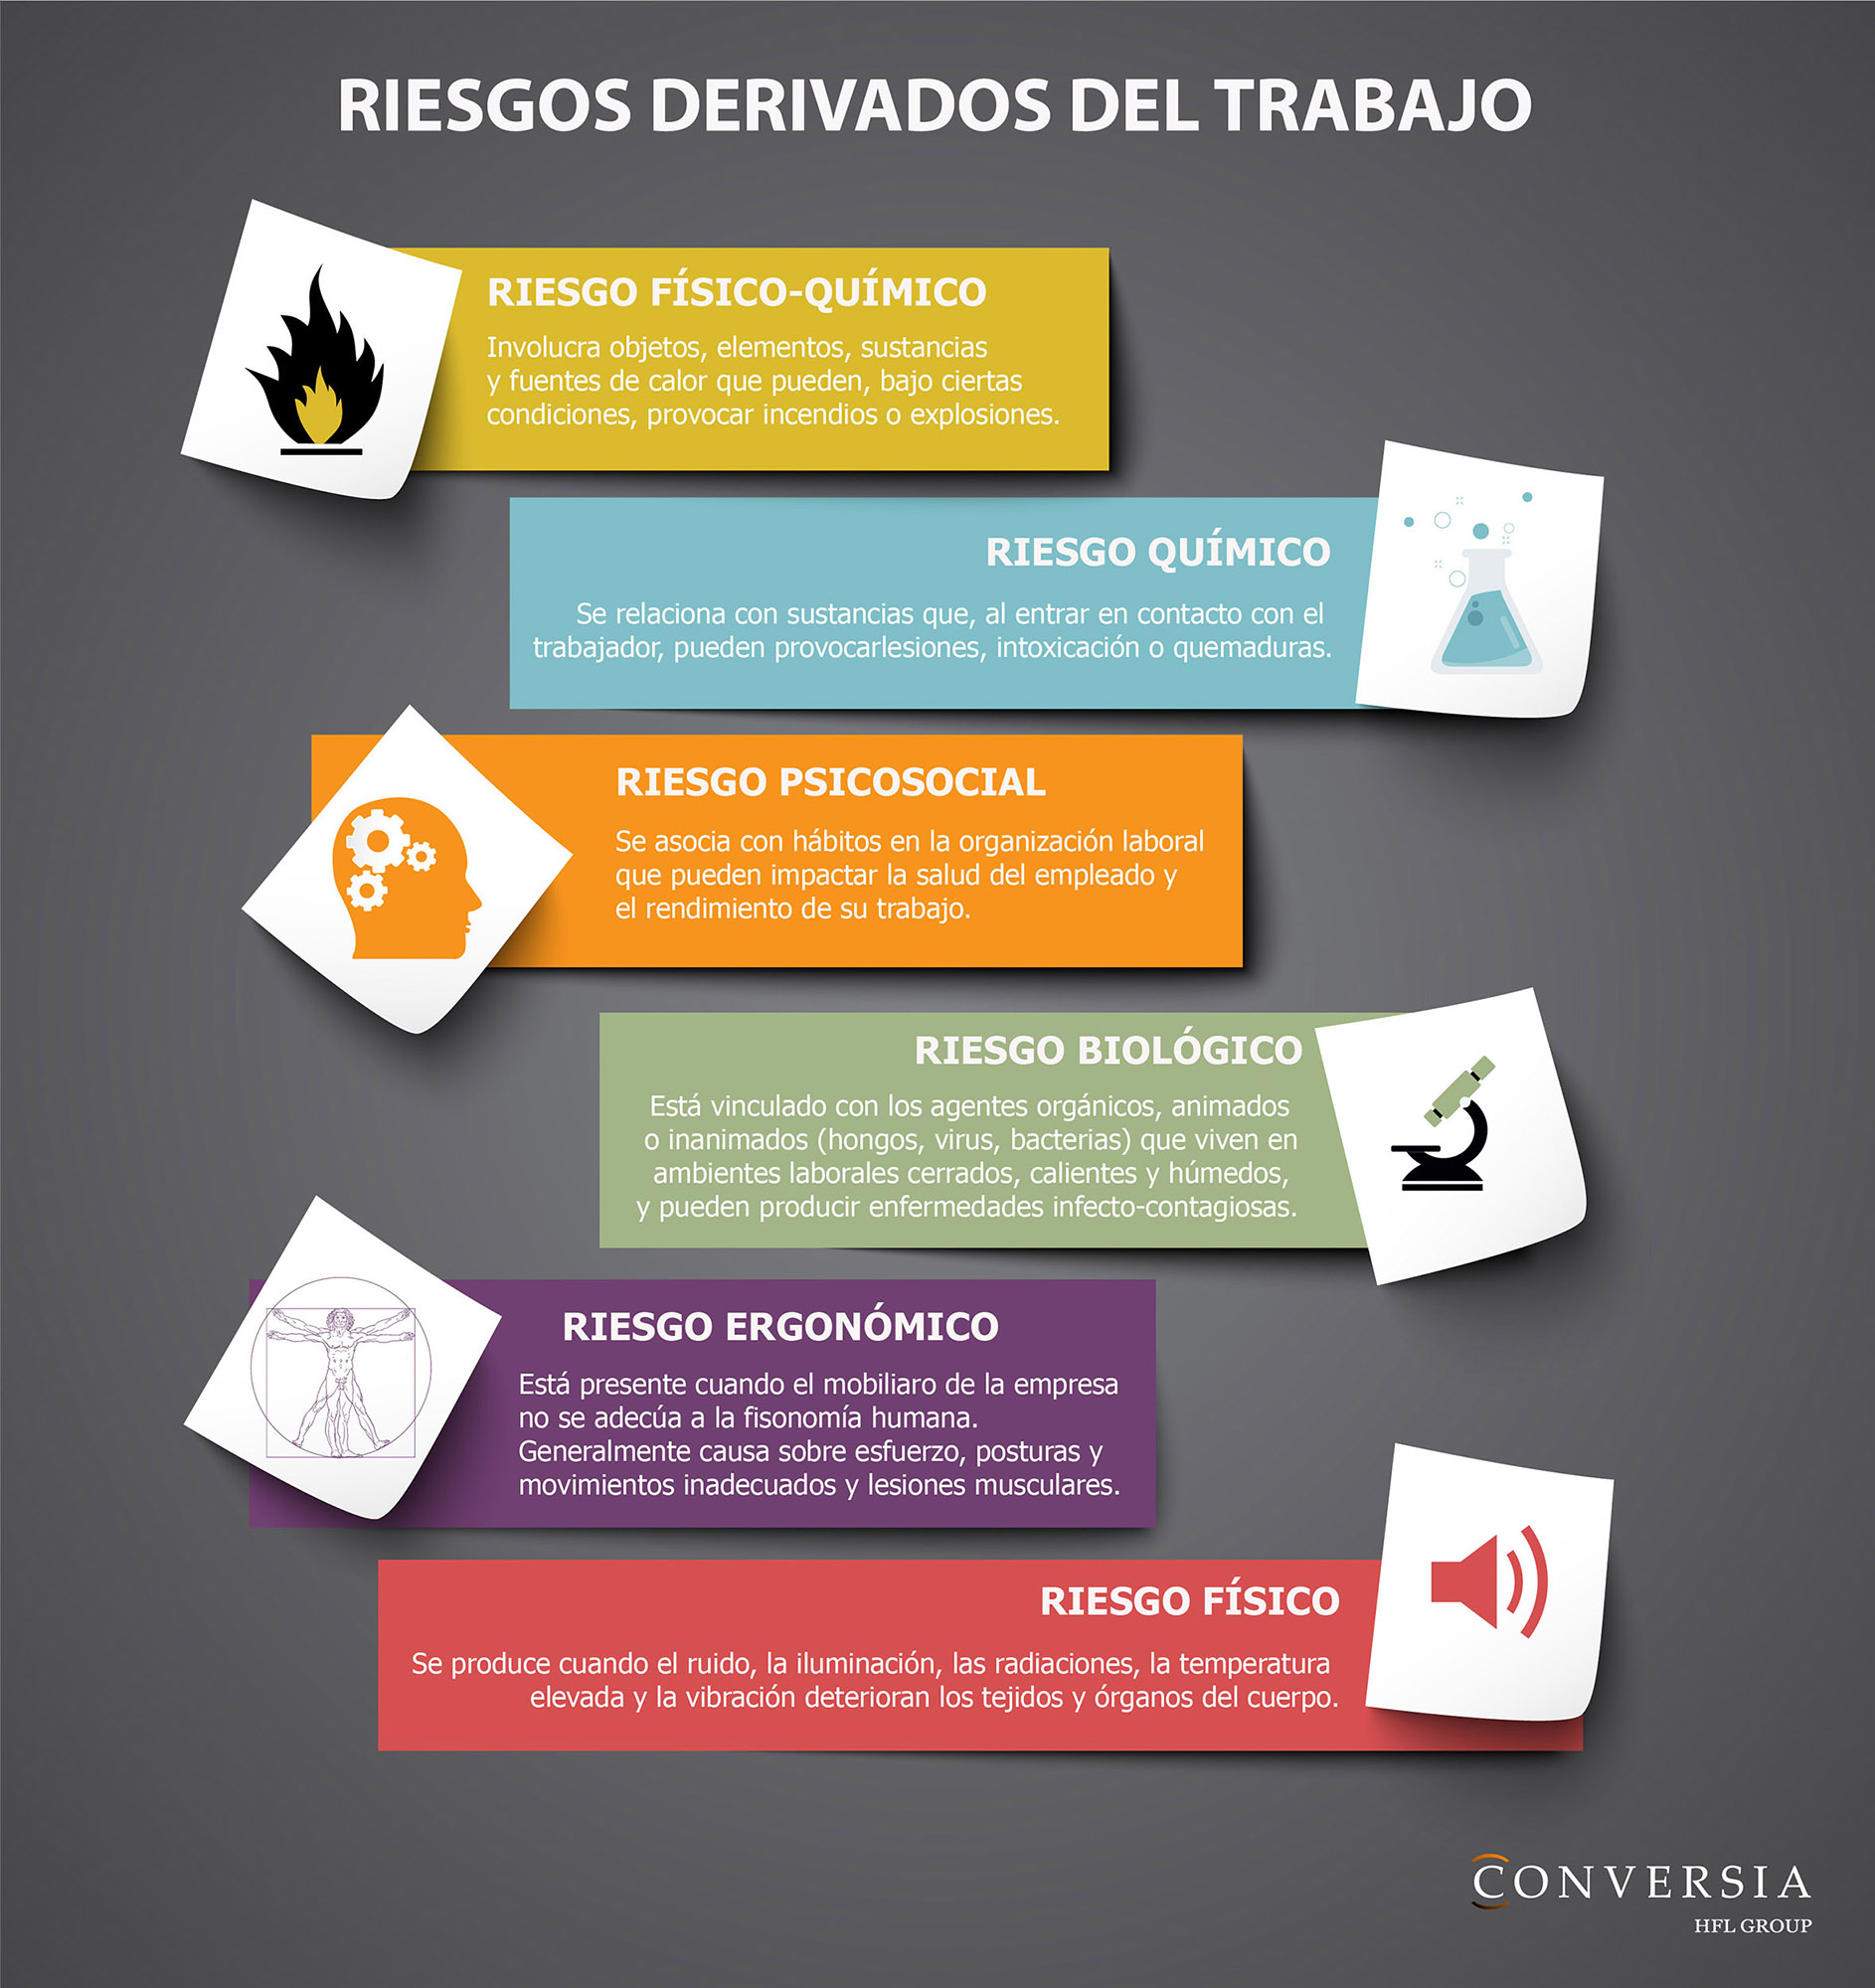 Infografía creada por Conversia sobre los problemas y riesgos laborales derivados del trabajo